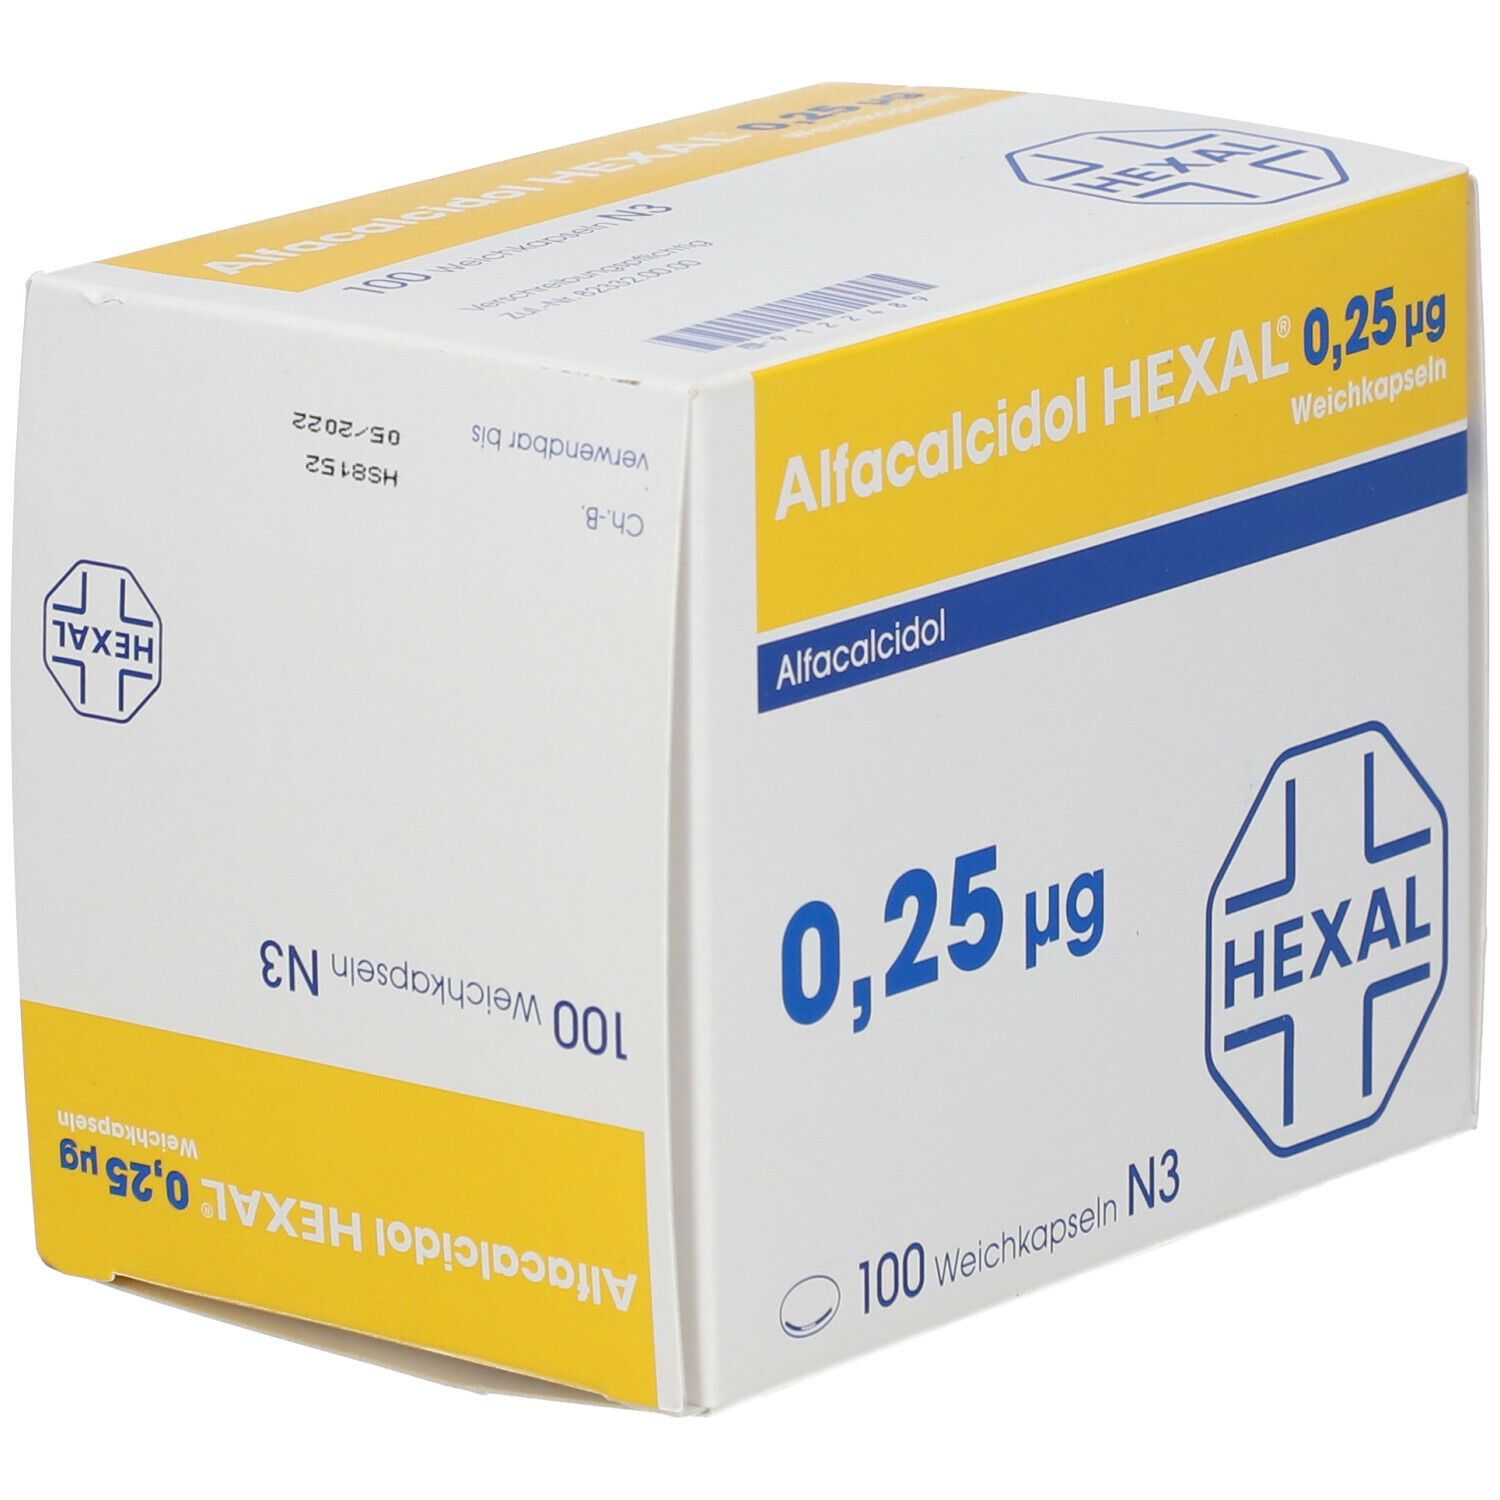 Alfacalcidol HEXAL® 0,25 µg